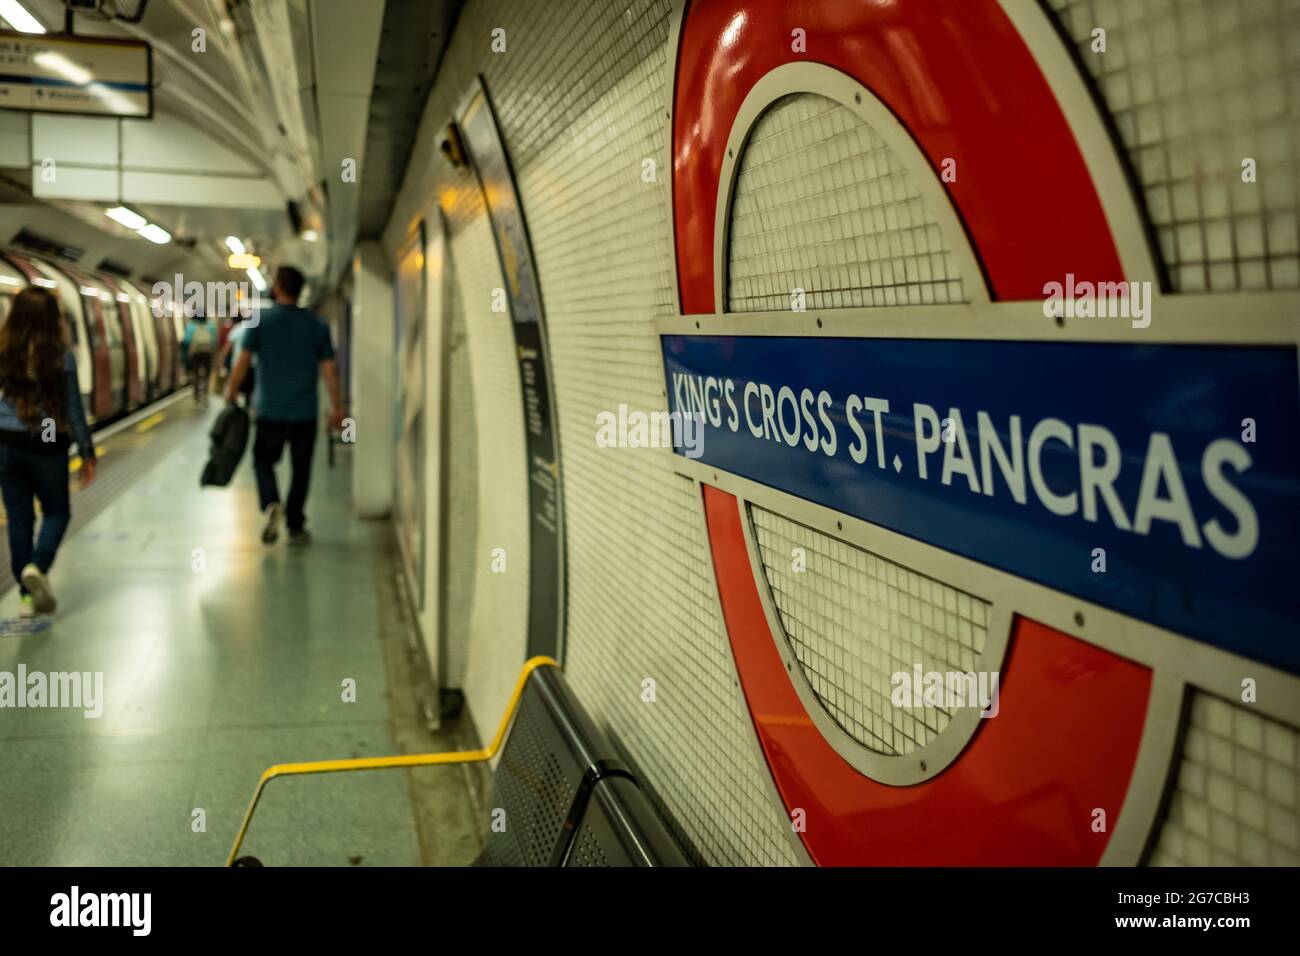 Londres - juillet 2021 : plate-forme de la station de métro Kingds Cross St Pancras London. Banque D'Images